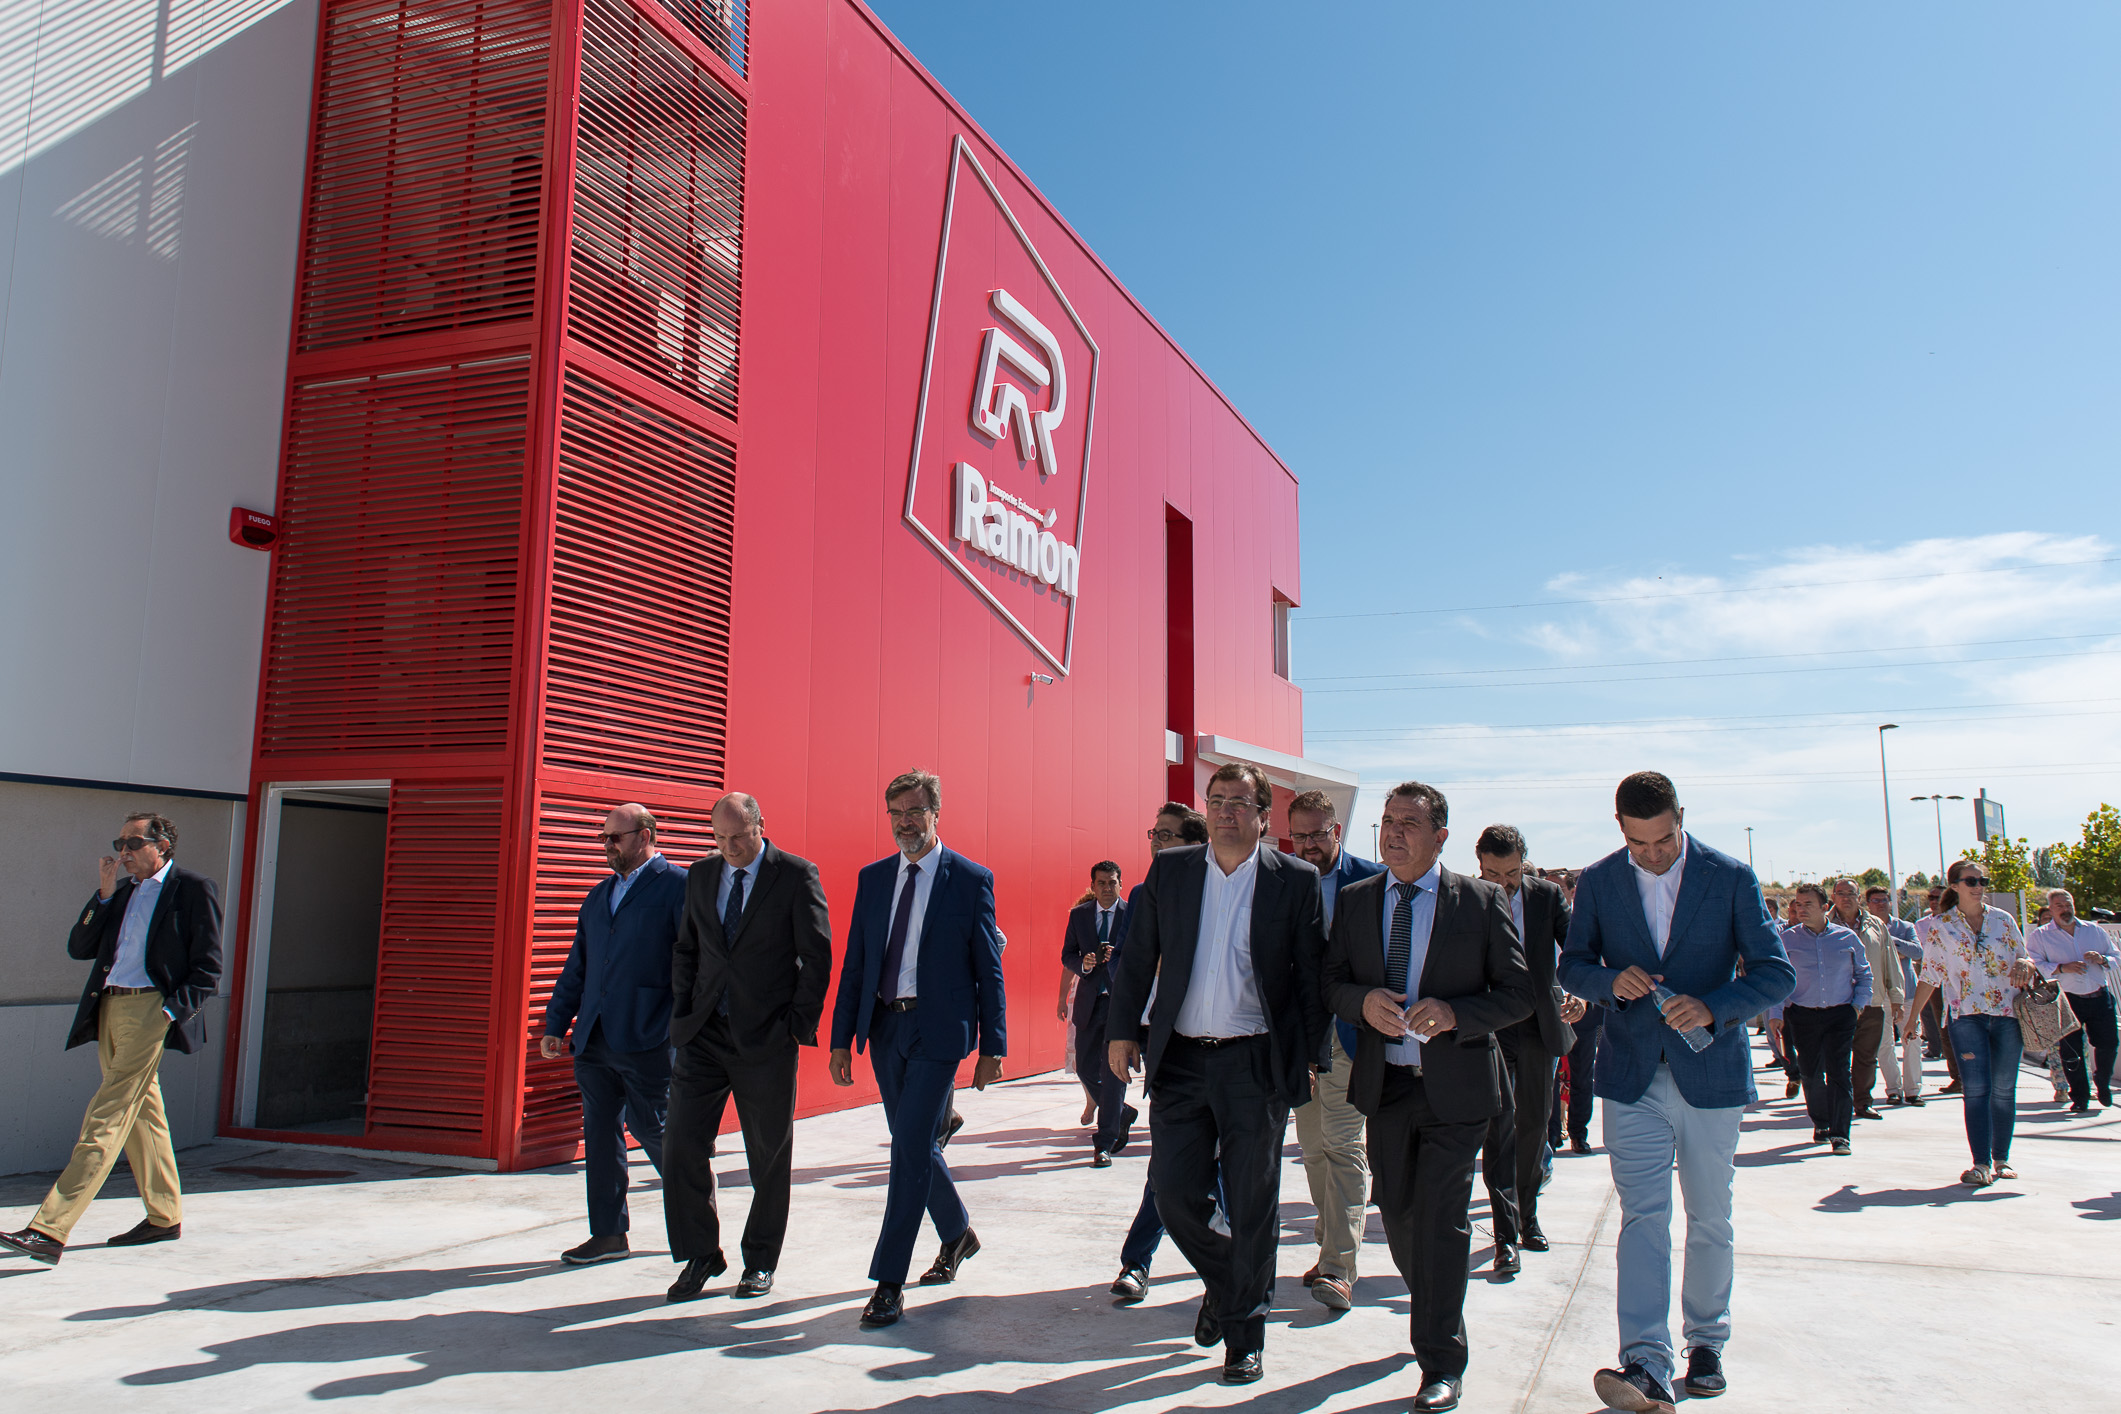 Integra2 proyecta un nuevo almacén en Andalucía, tras sustituir el de Mérida